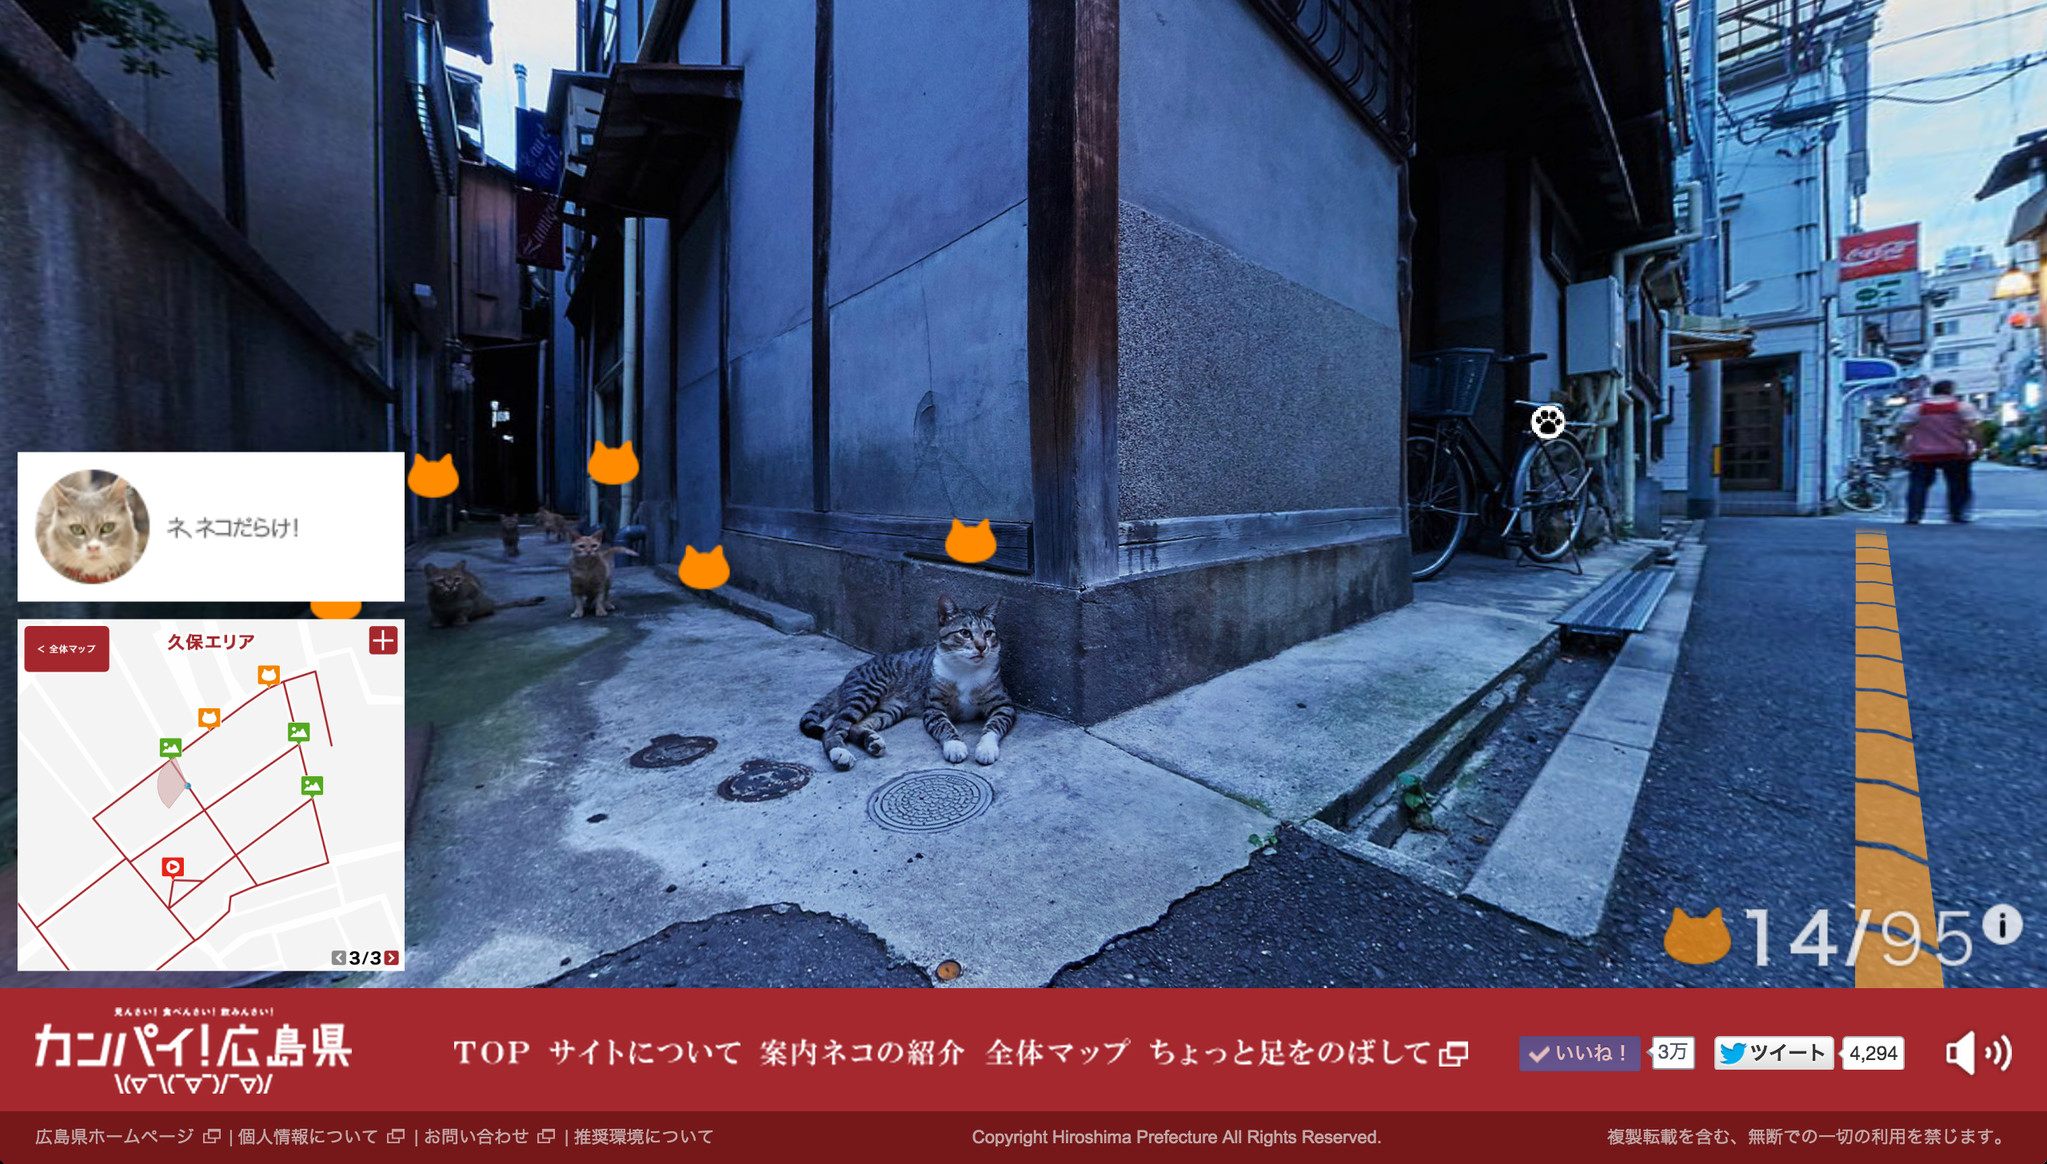 広島 Cat Street View 尾道編 第二弾 10 1 久保 御袖天満宮 の2エリアを追加公開 広島県のプレスリリース